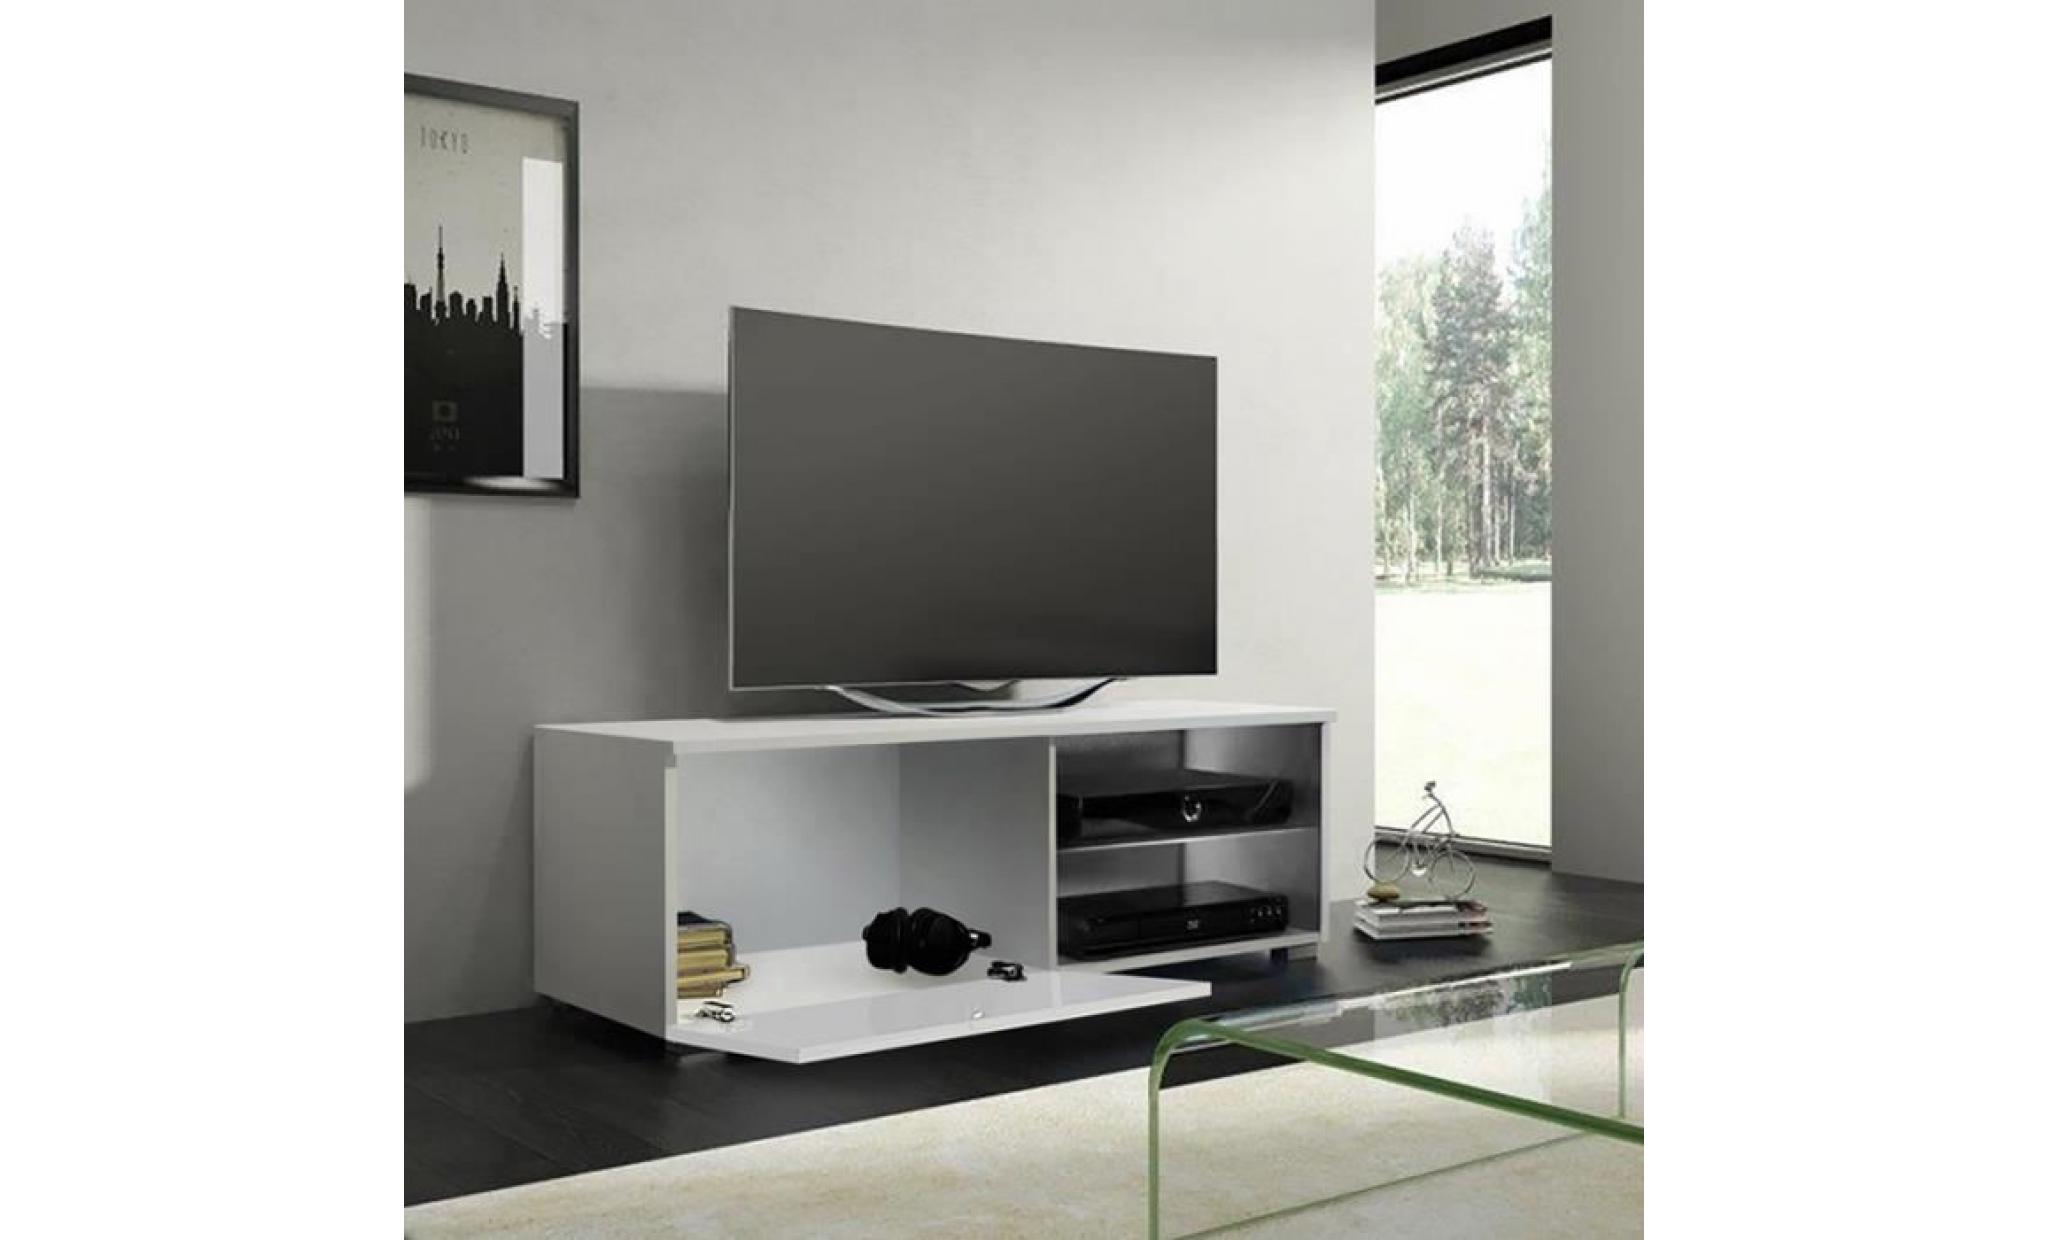 meuble tv / meuble salon   tenus single   100 cm   blanc mat / blanc brillant   avec led   2 compartiments ouverts   style classique pas cher